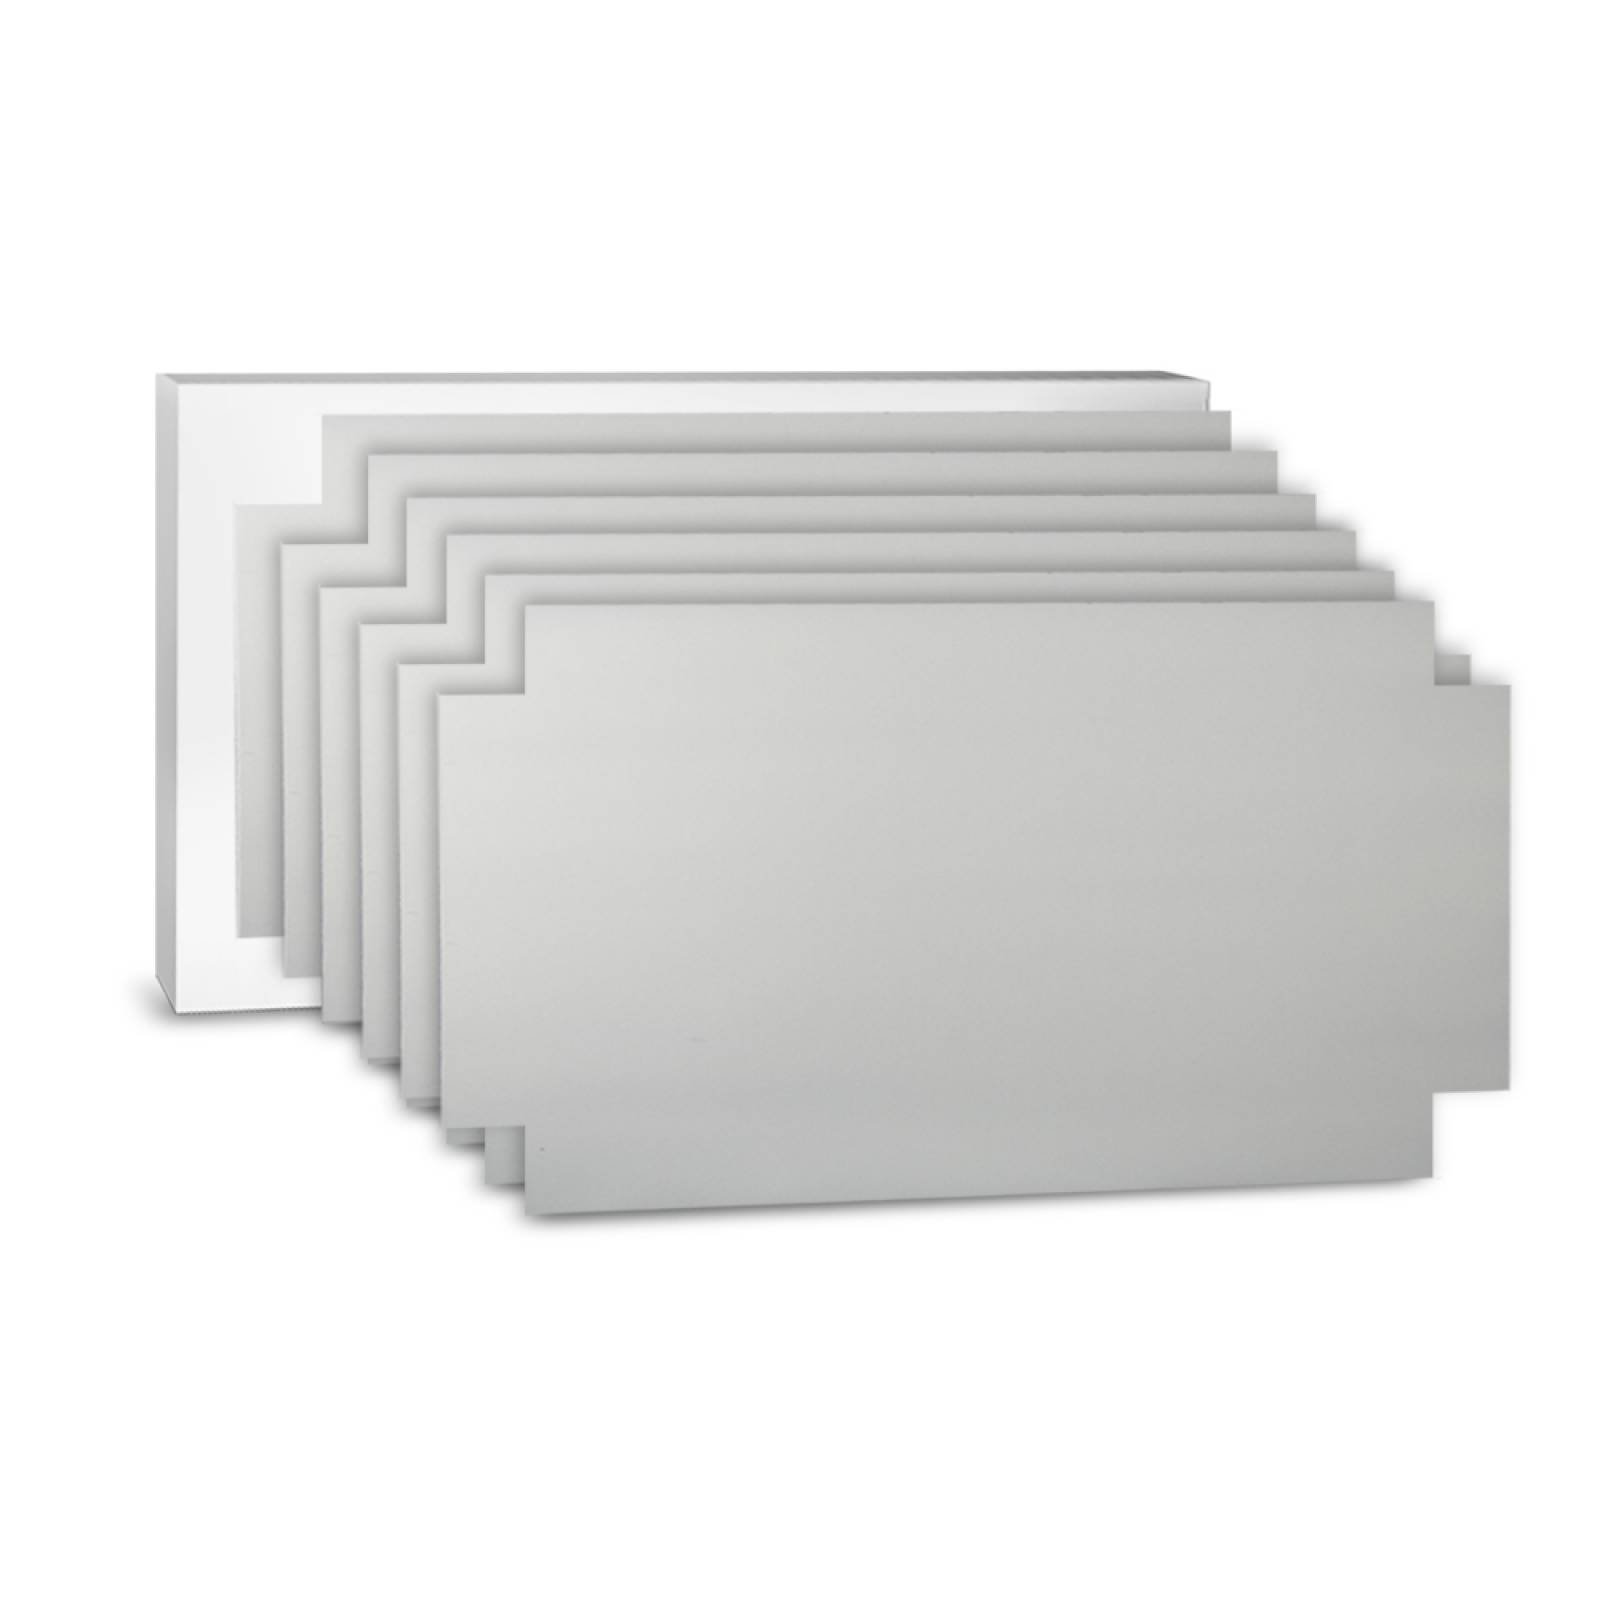 Aislante Cerámico Protector Térmico para Pared de 52 x 20 cm Blanco, Paquete 6 Piezas, Mod: 3PTPP6Bl